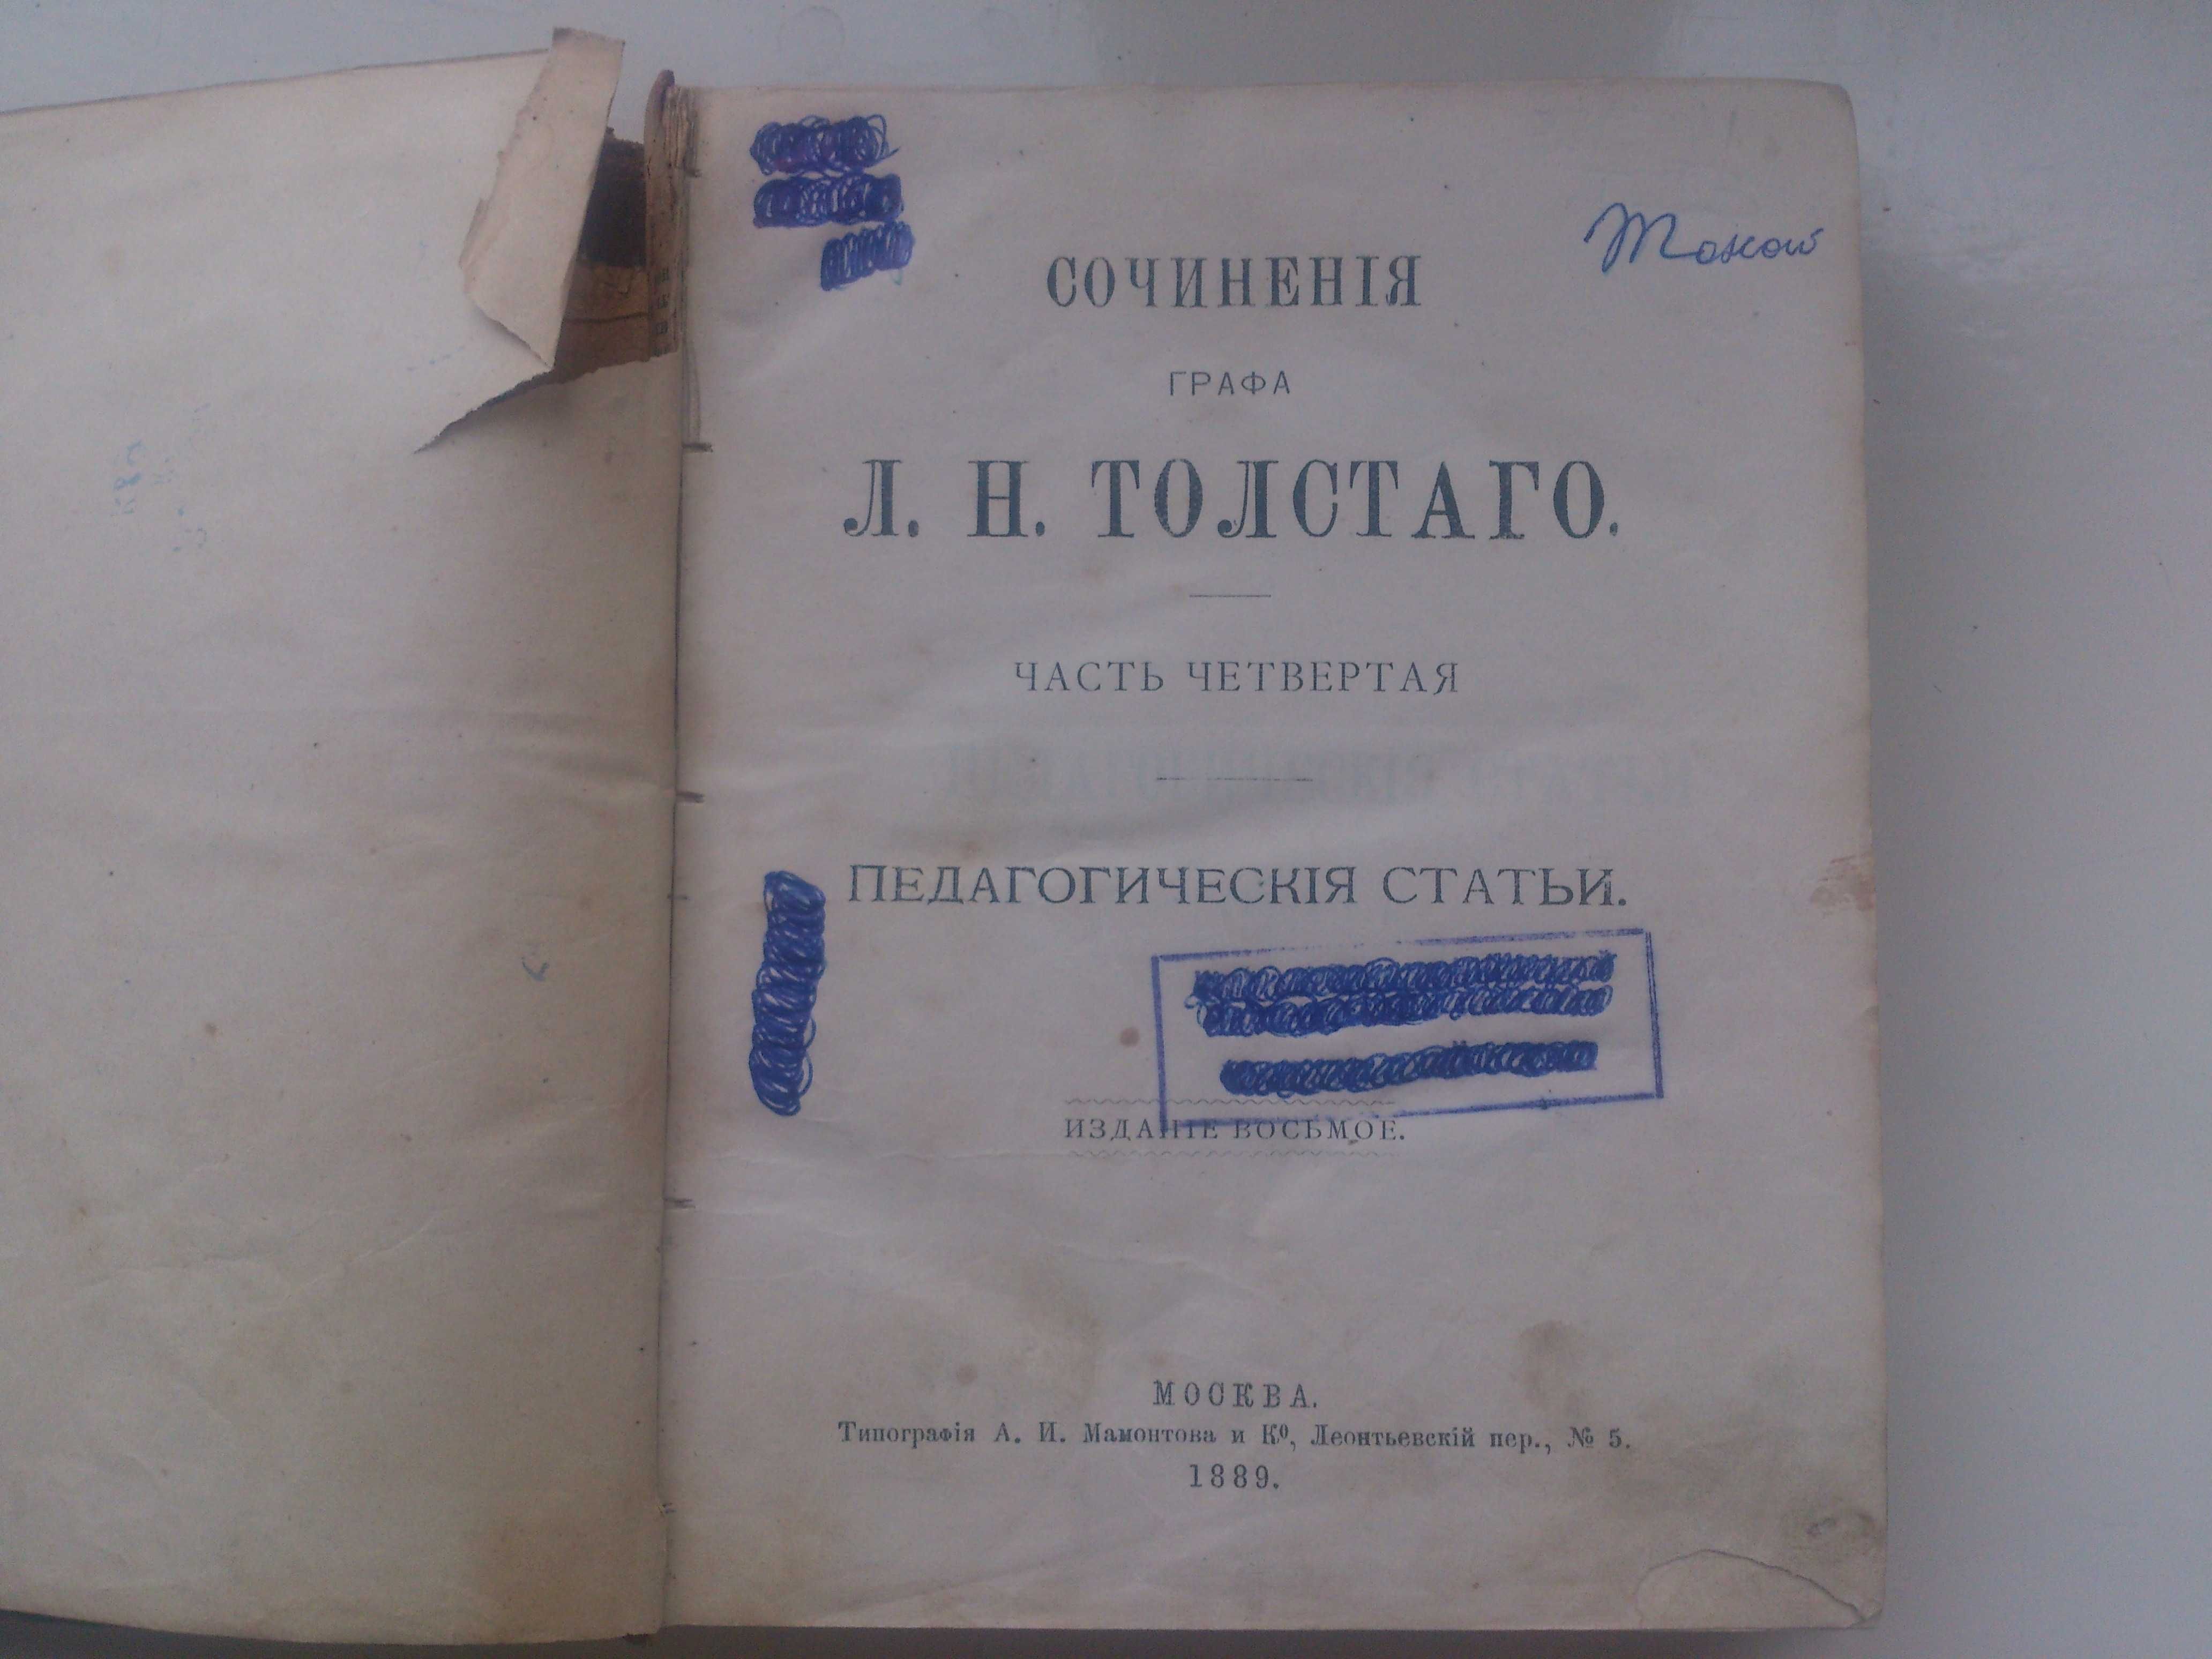 Лев Толстой - сочинения, 1889 рік